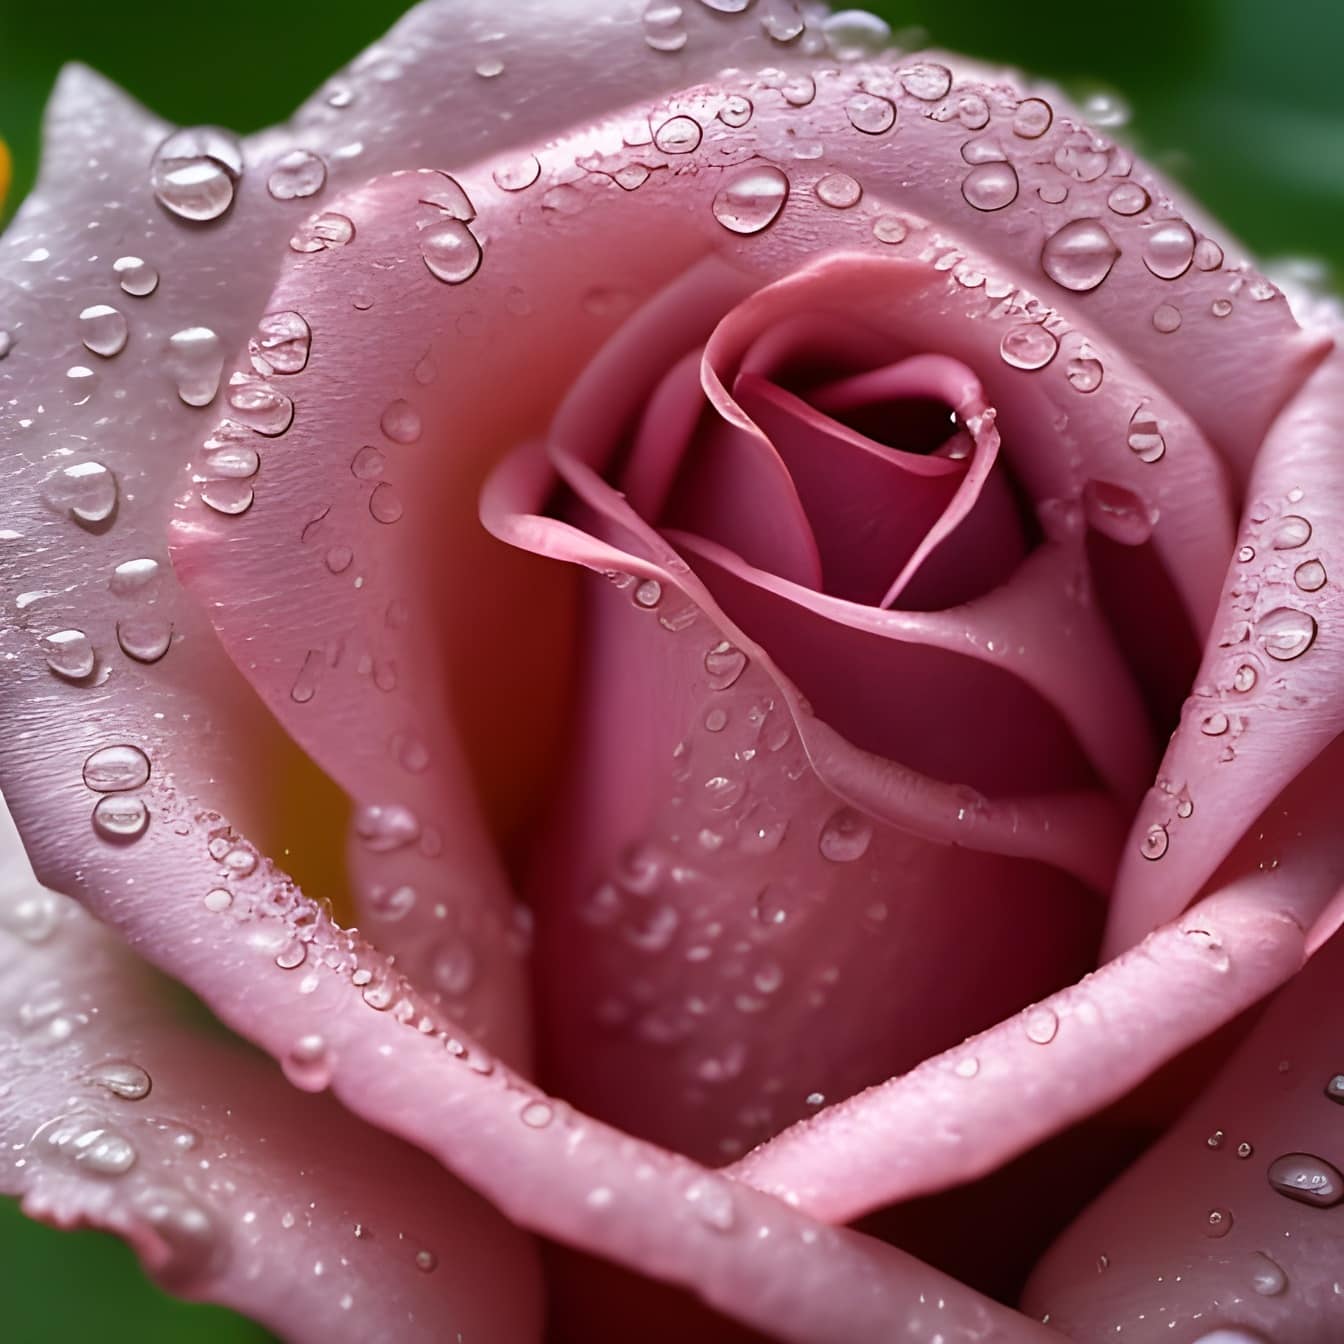 τριαντάφυλλο, ροζ, από κοντά, σταγόνες νερού, έργα τέχνης, εικονογράφηση, λουλούδι, πέταλα